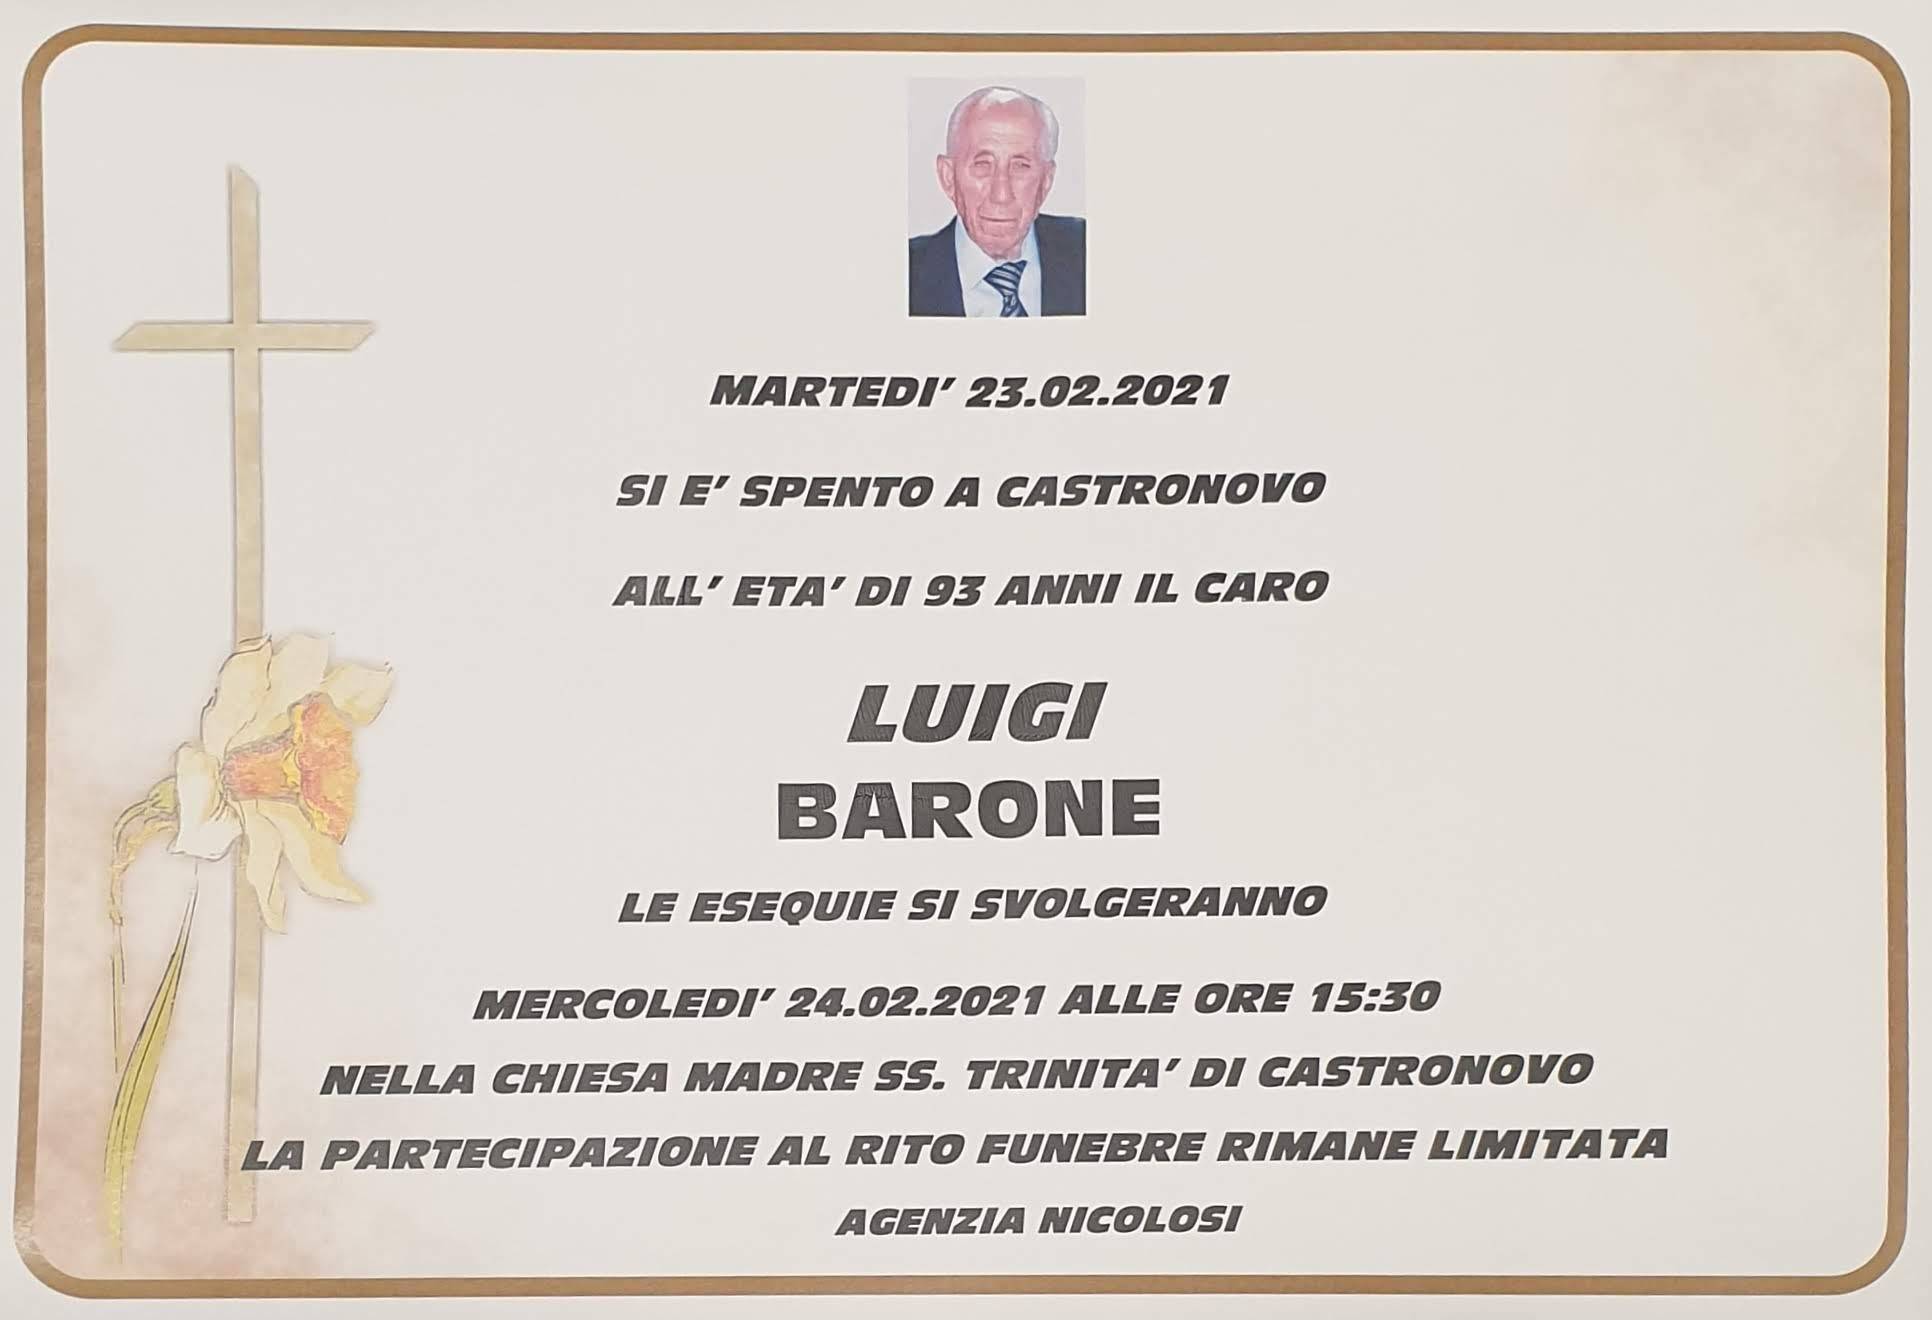 Luigi Barone